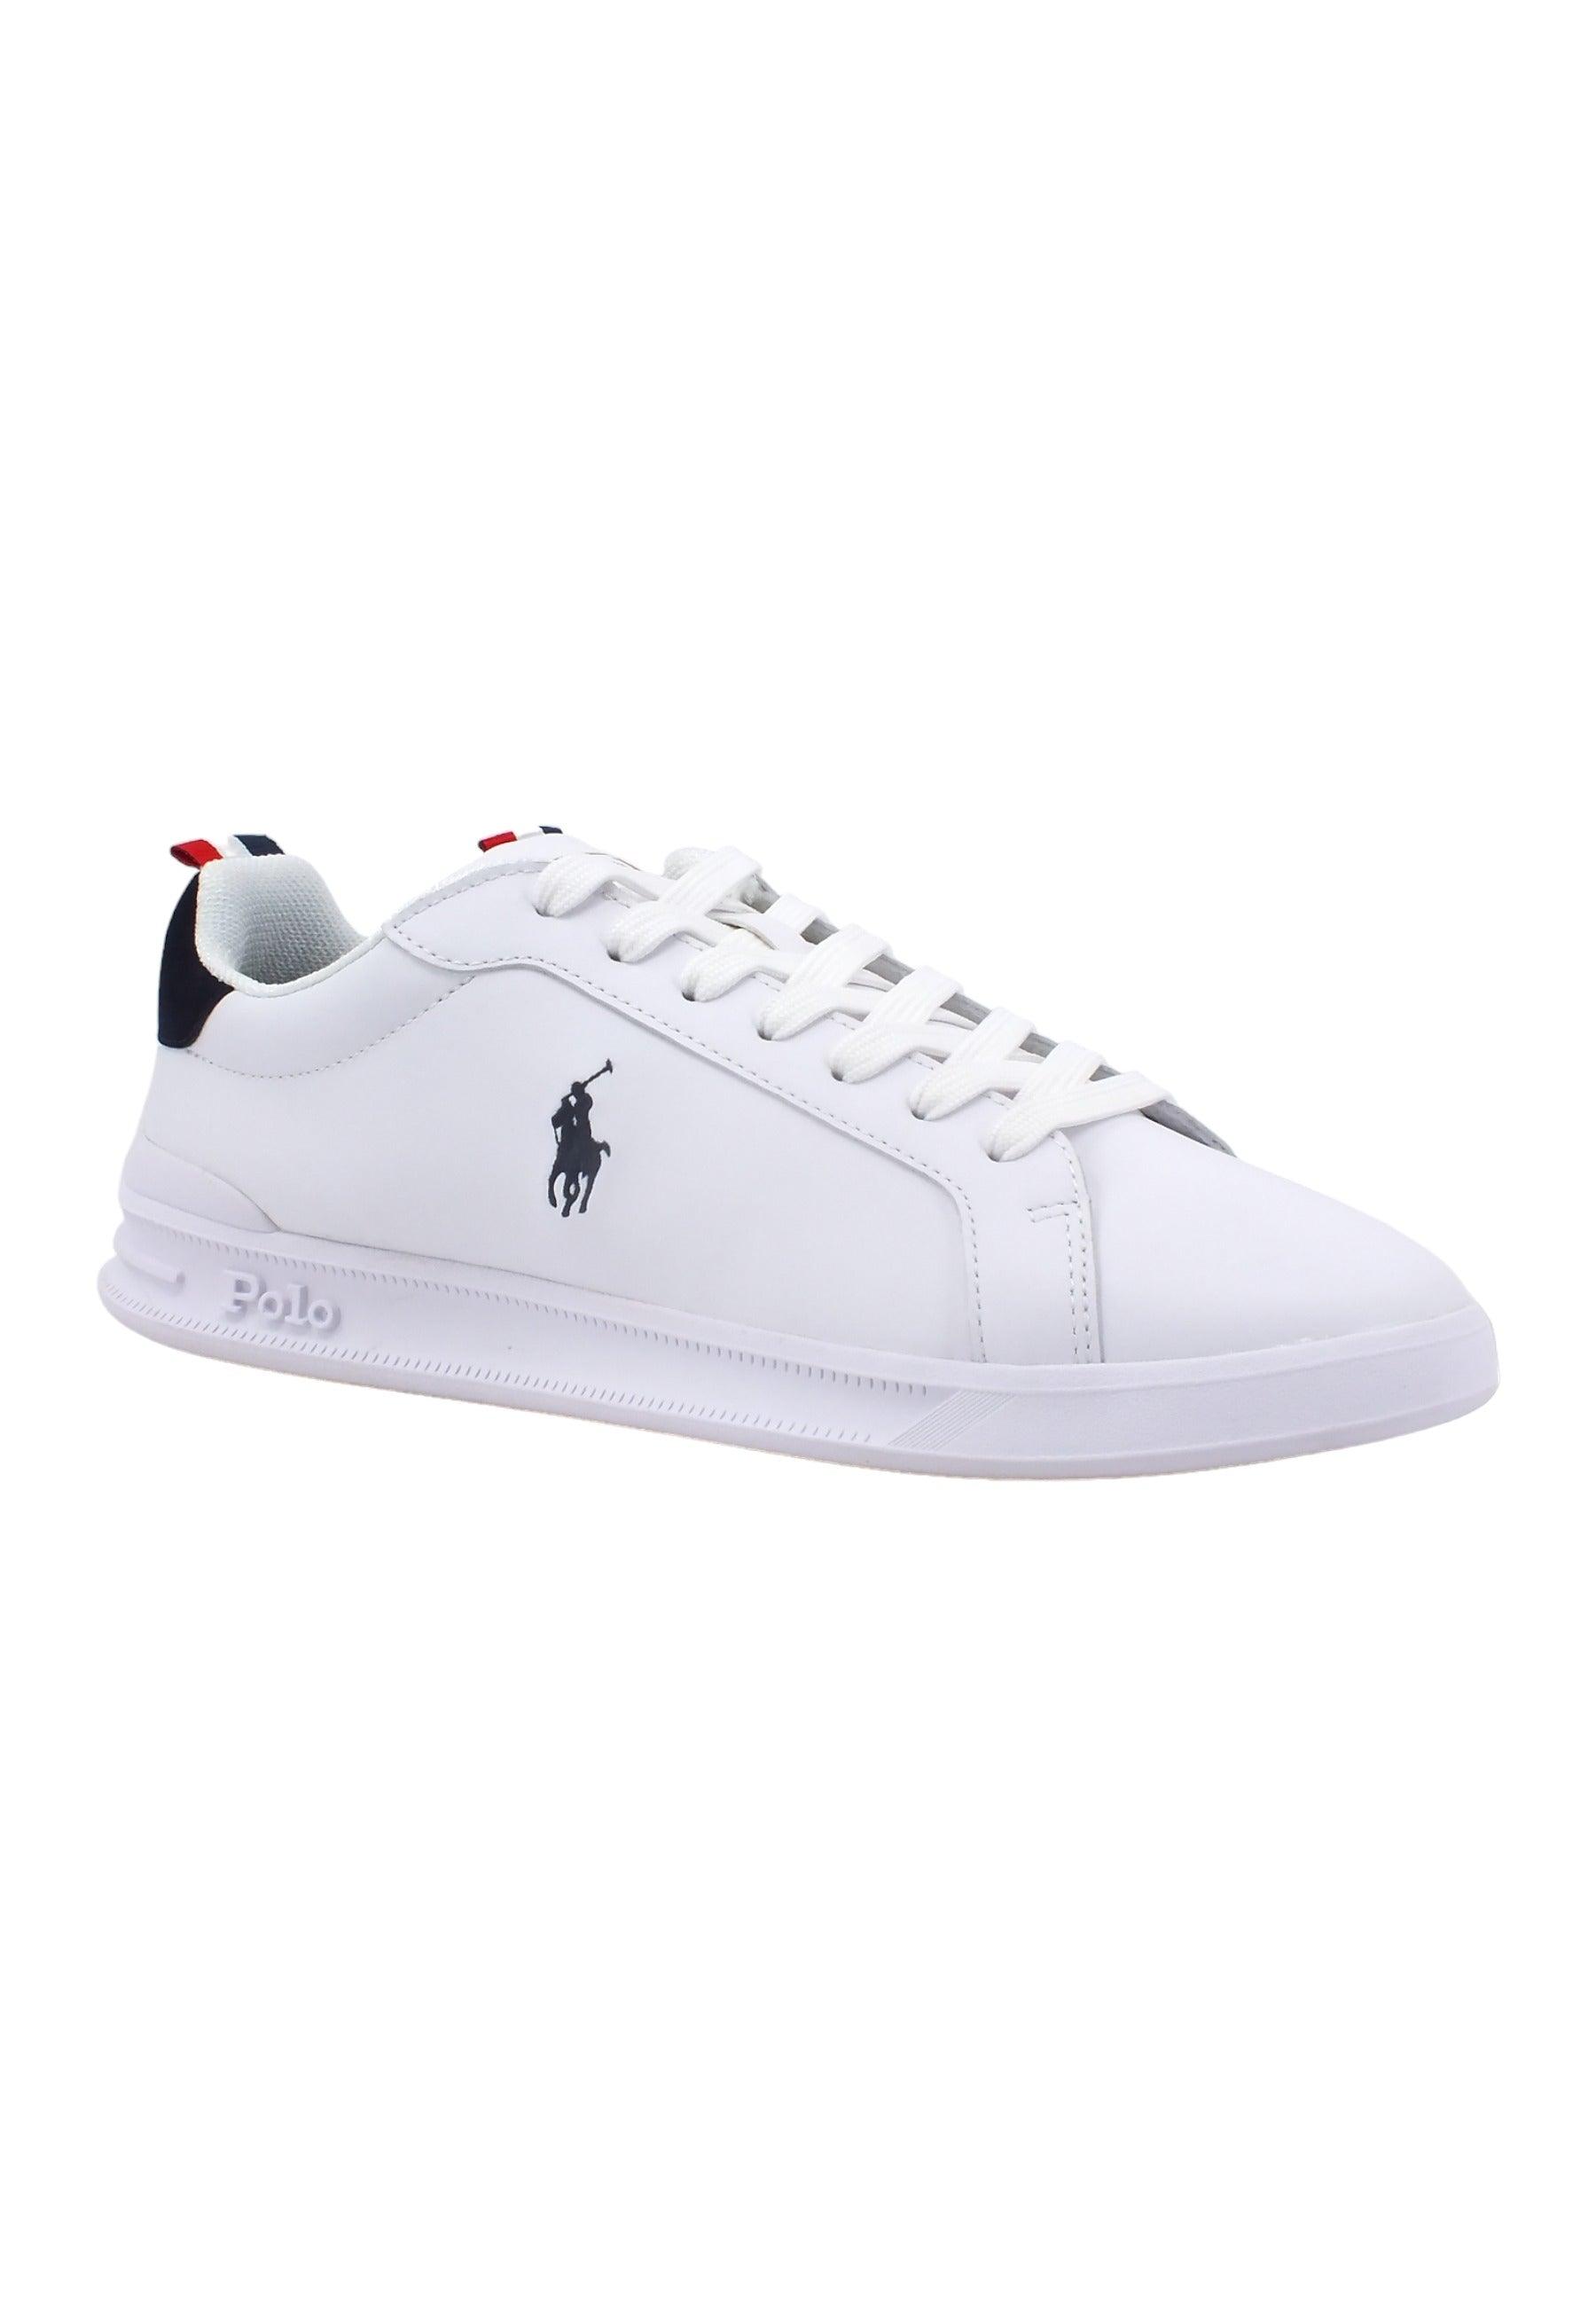 POLO RALPH LAUREN Sneaker Uomo White Navy Red 809860883003U - Sandrini Calzature e Abbigliamento